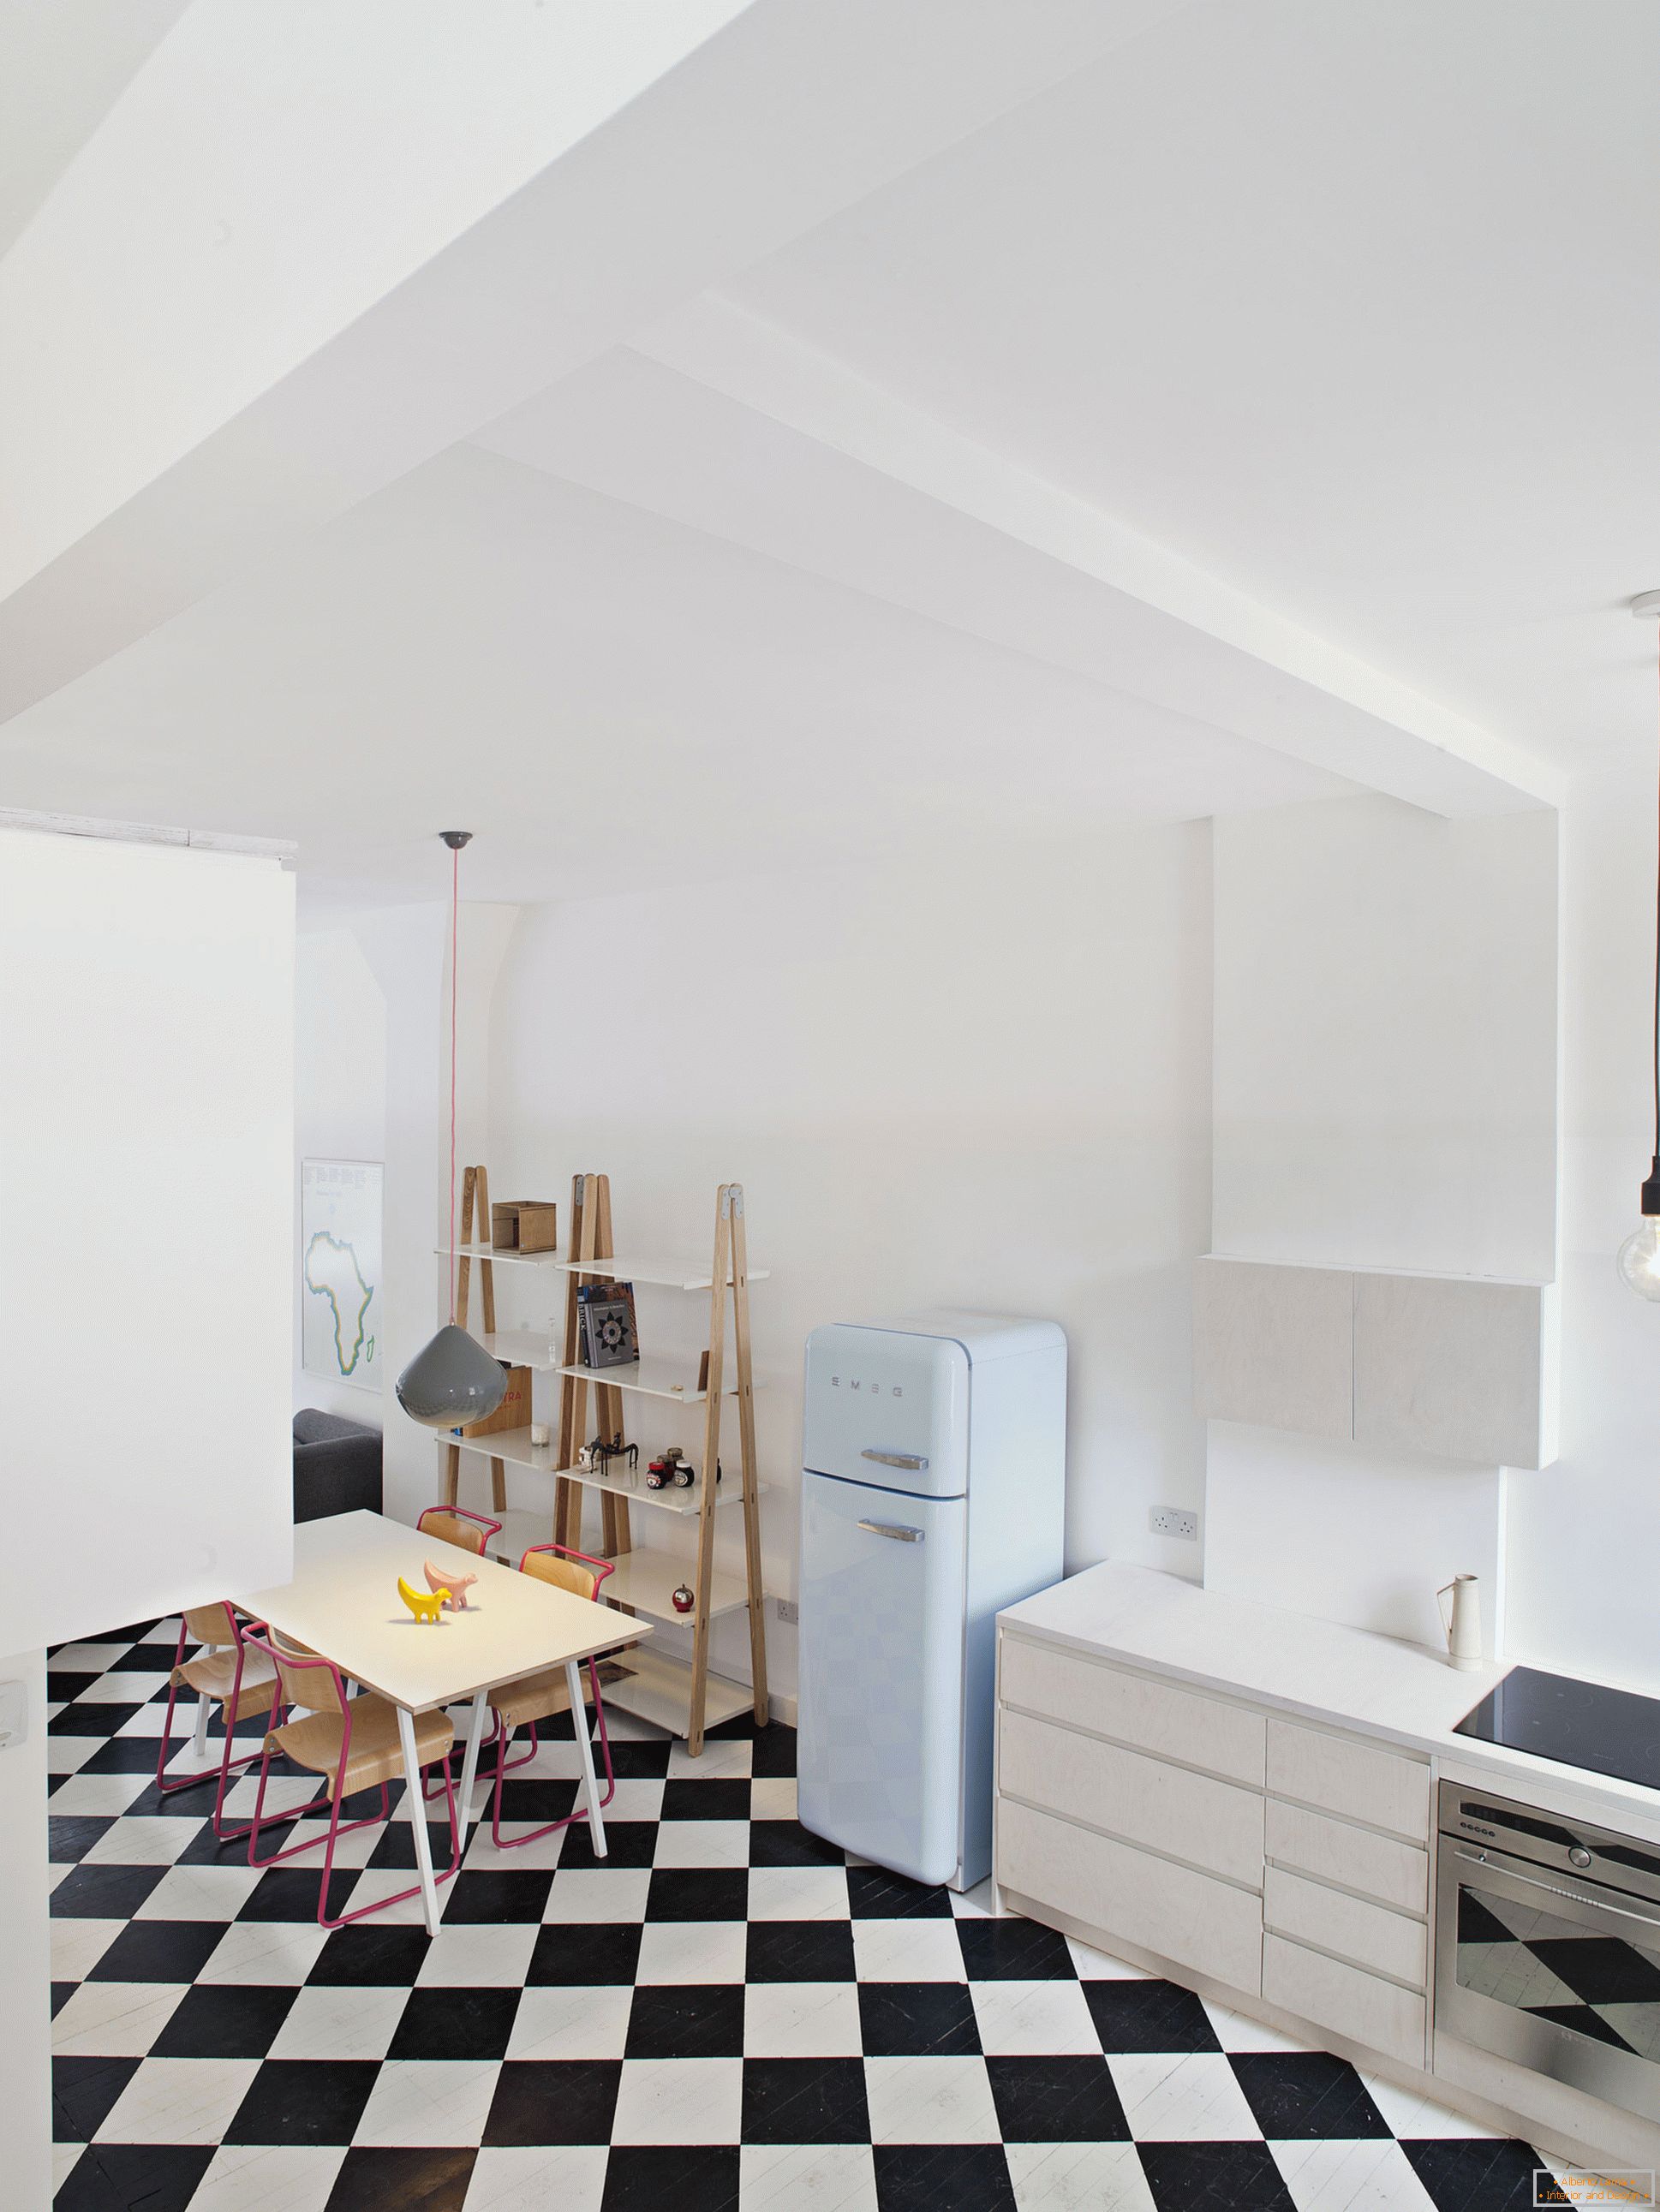 City View House - panetteria, trasformata in un appartamento studio residenziale, Londra, Regno Unito